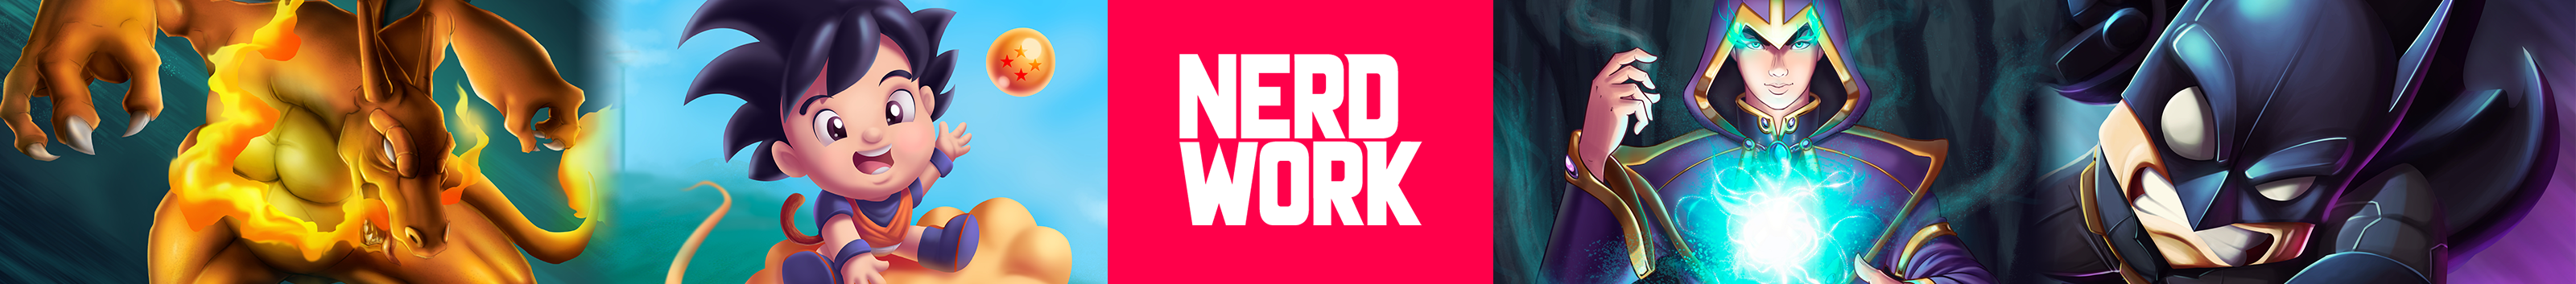 Banner de perfil de Nerdworker .